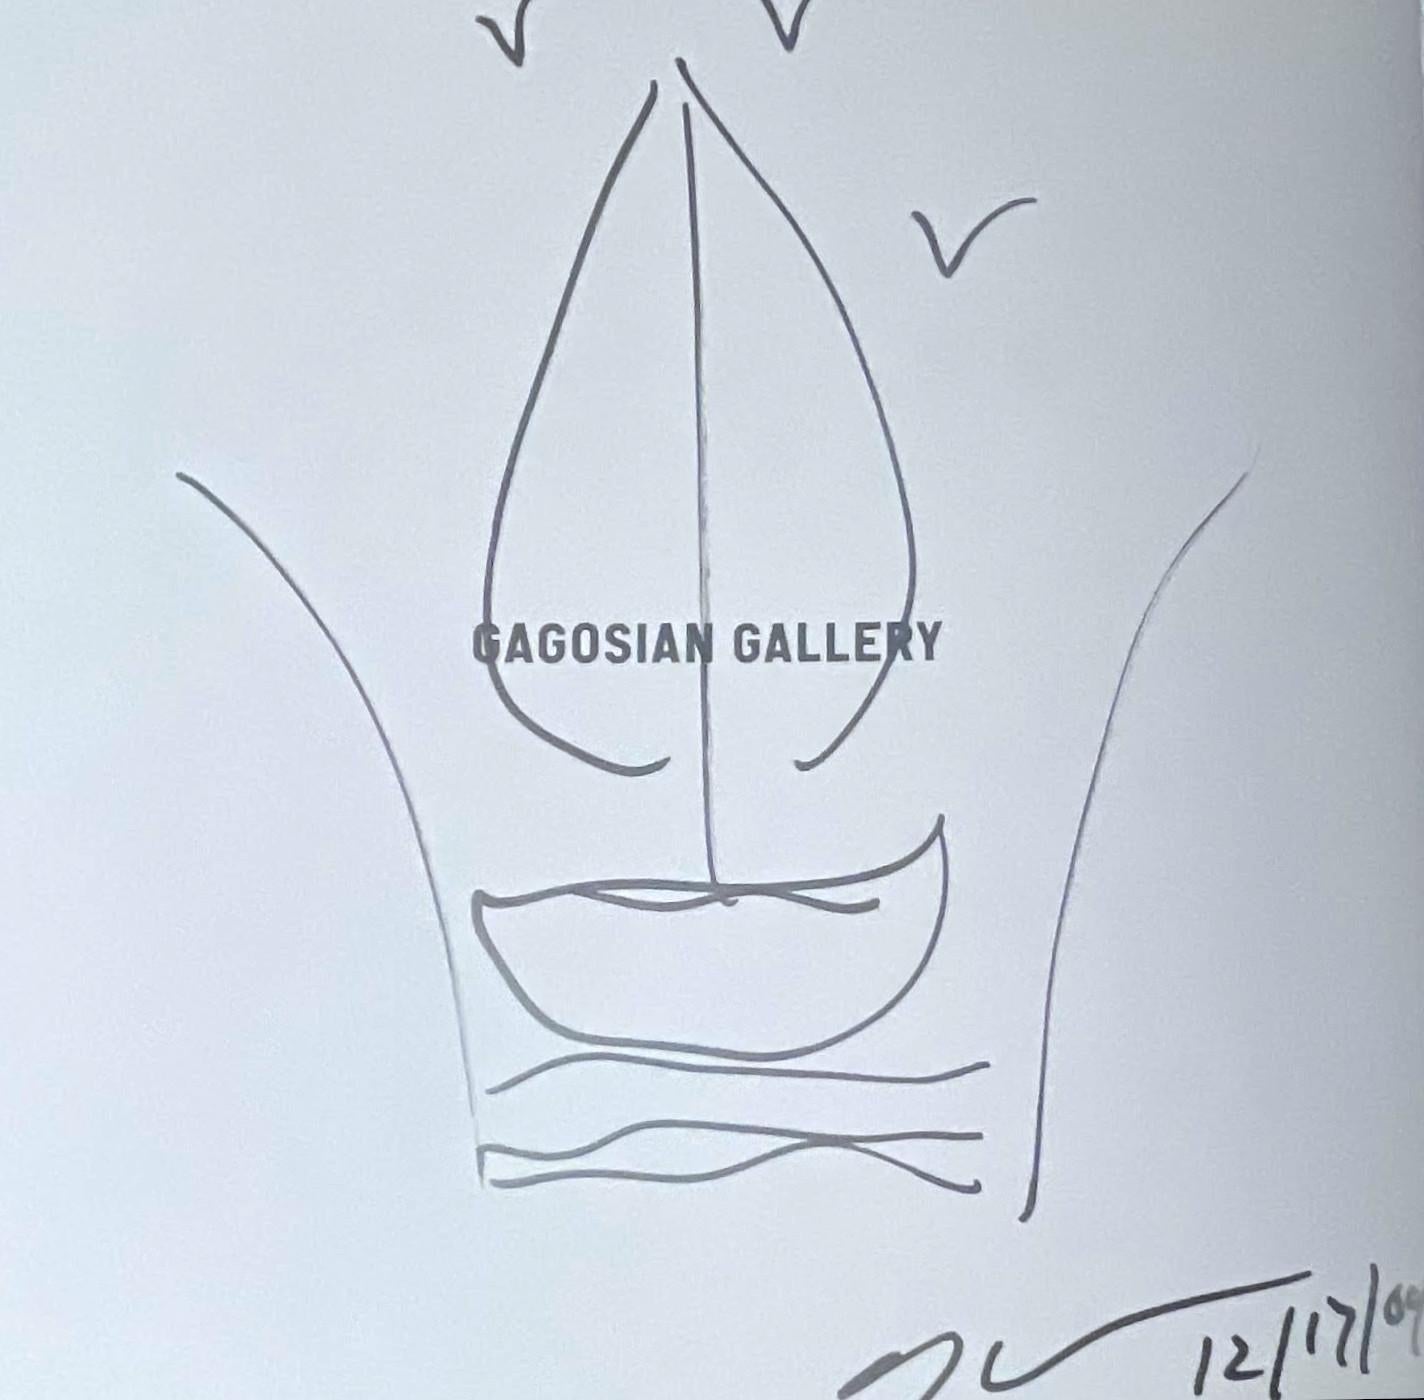 Jeff Koons
Sans titre (dessin de l'Antiquité), 2009
Dessin original unique réalisé au marqueur argenté sur la première page de garde de la monographie iconique de Koons 